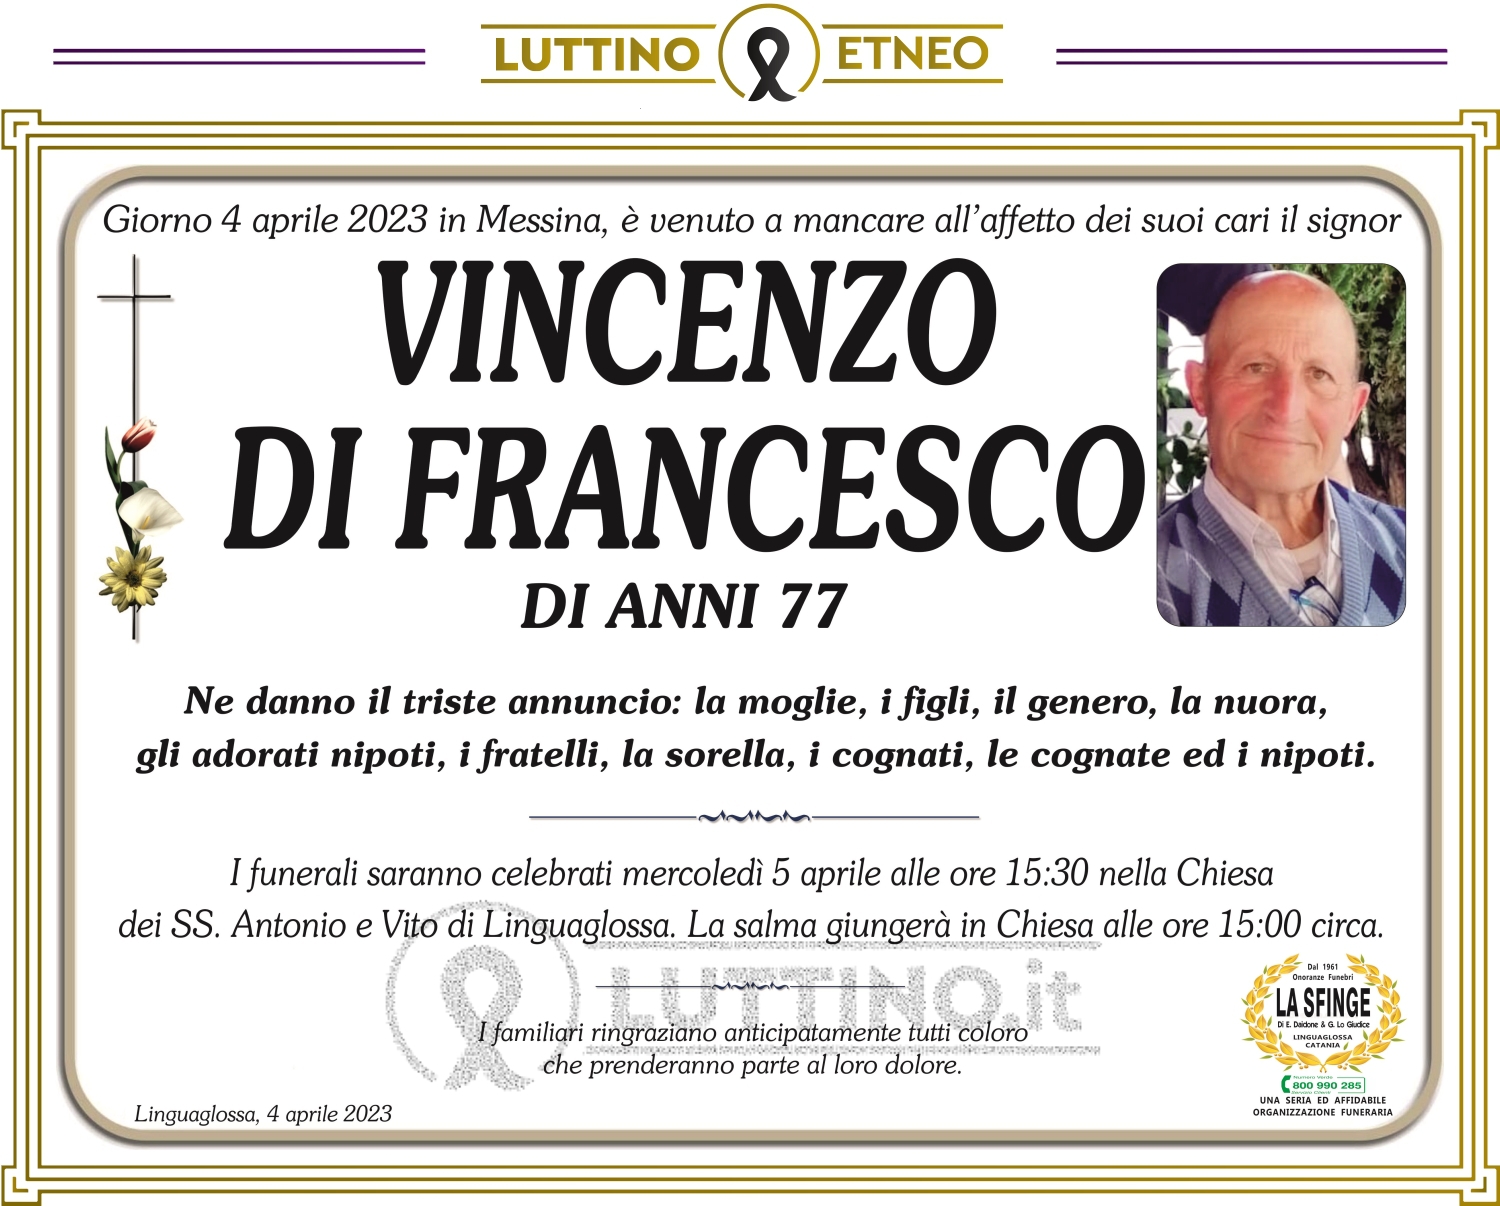 Vincenzo Di Francesco